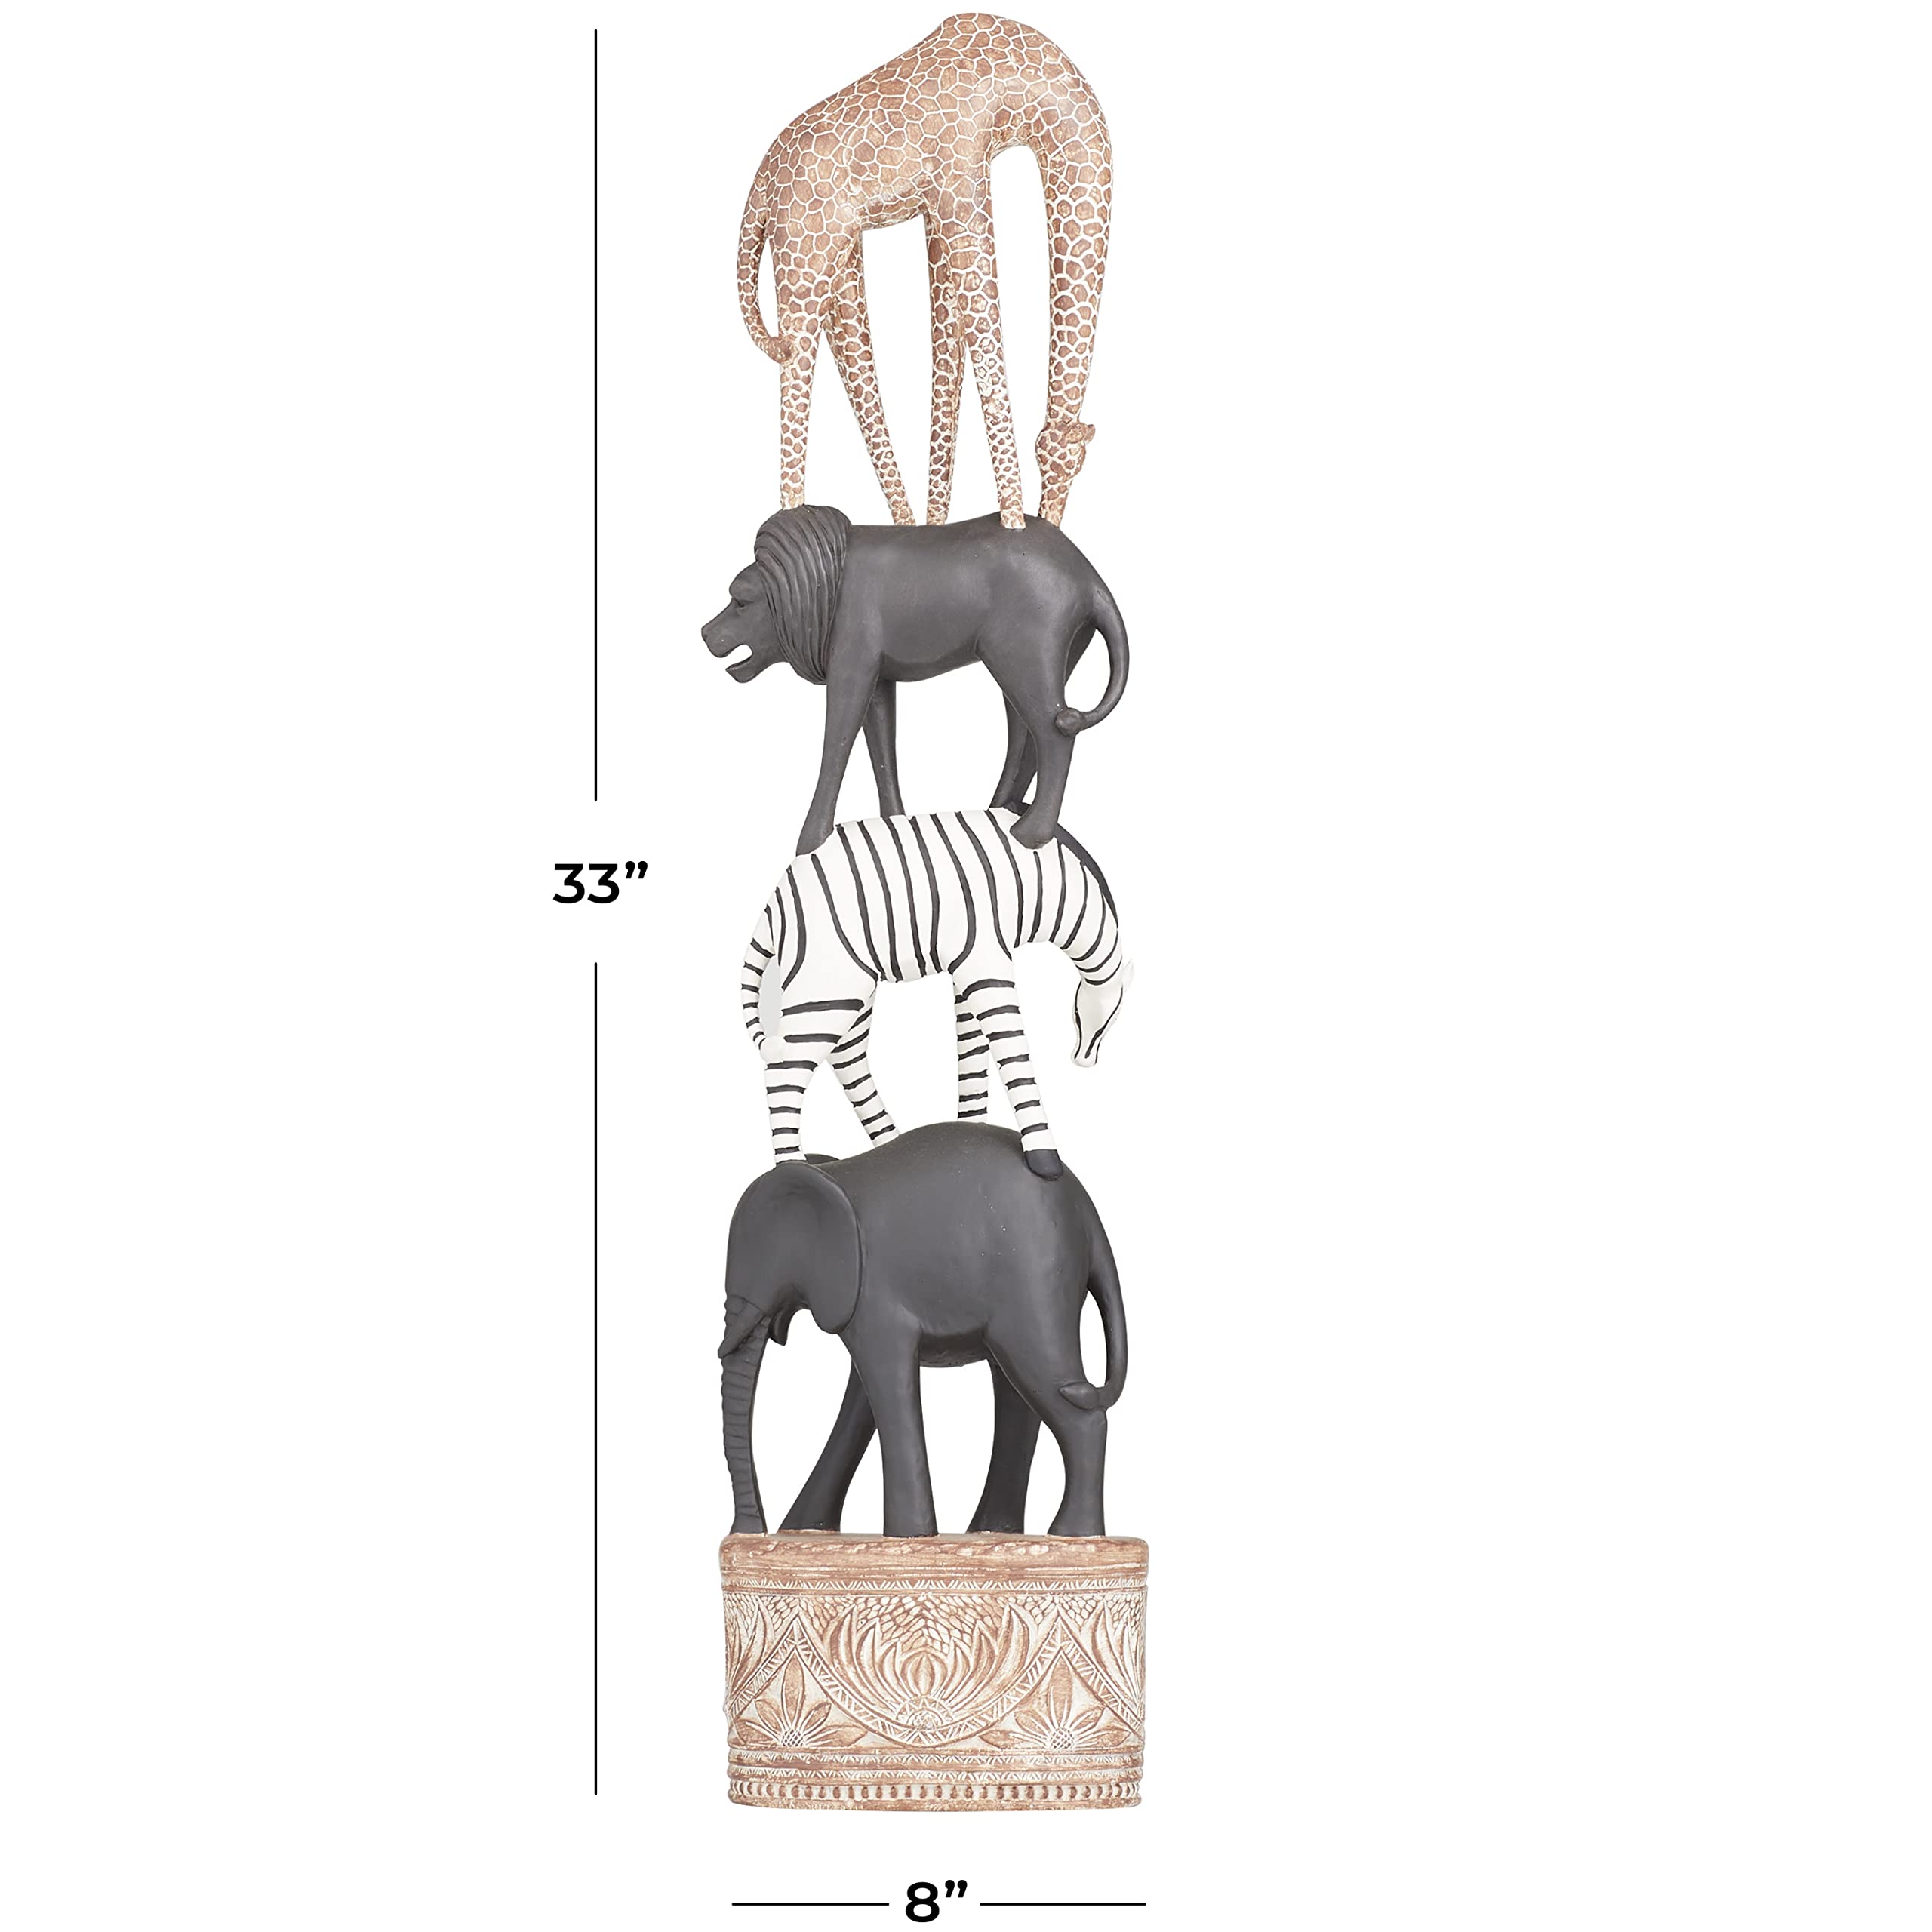 Deco 79 Polystone Safari Animal Sculpture, 8" x 5" x 33", Multi Colored (080374)